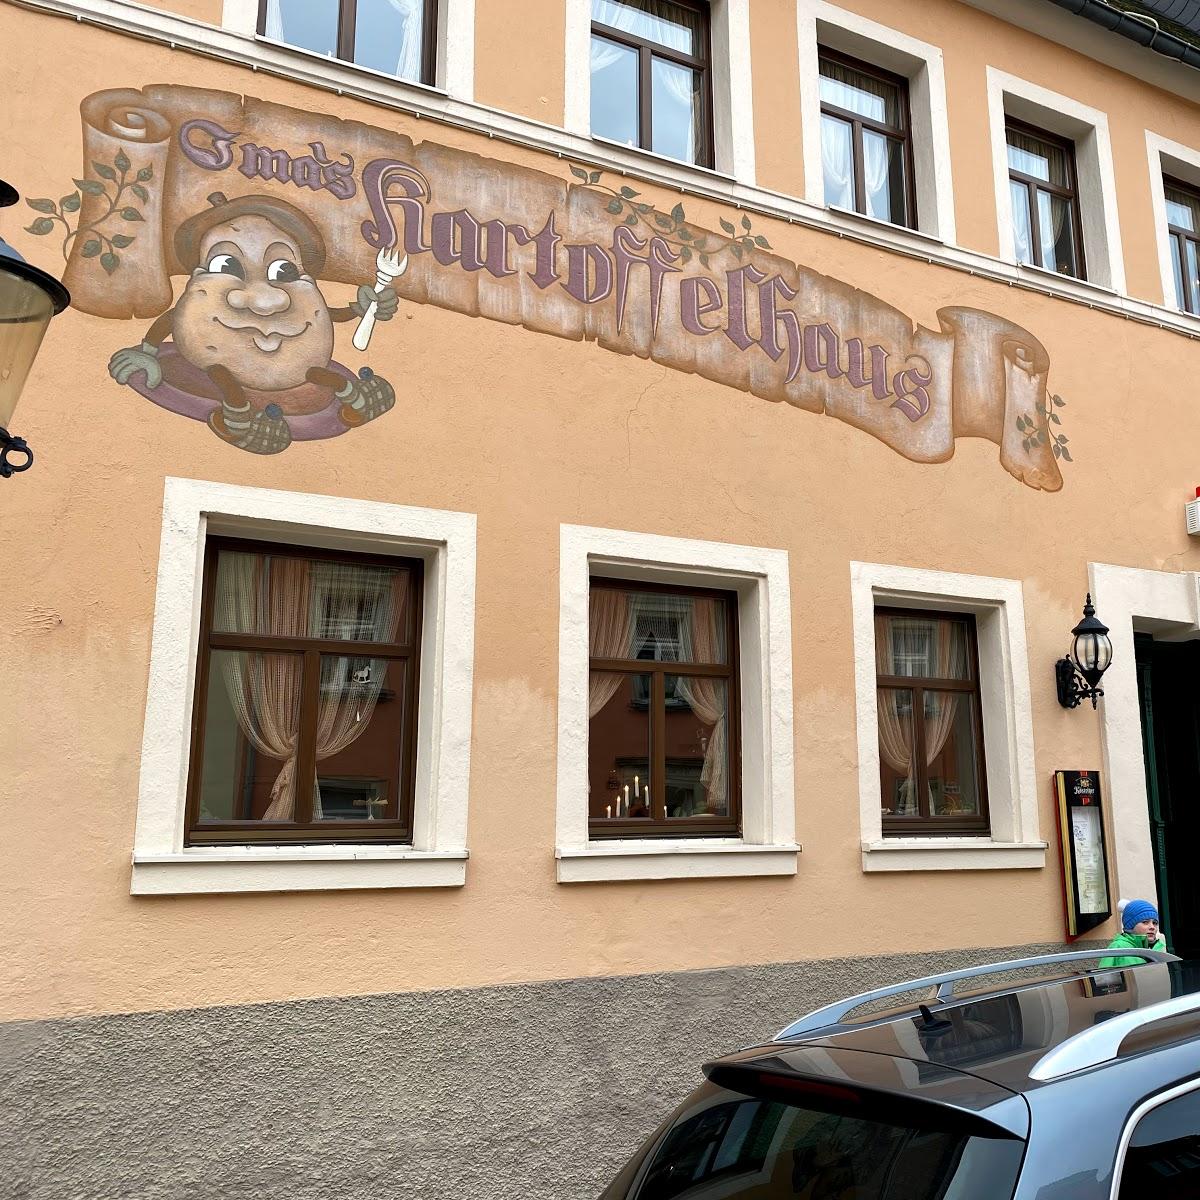 Restaurant "Oma’s Kartoffelhaus" in Marienberg